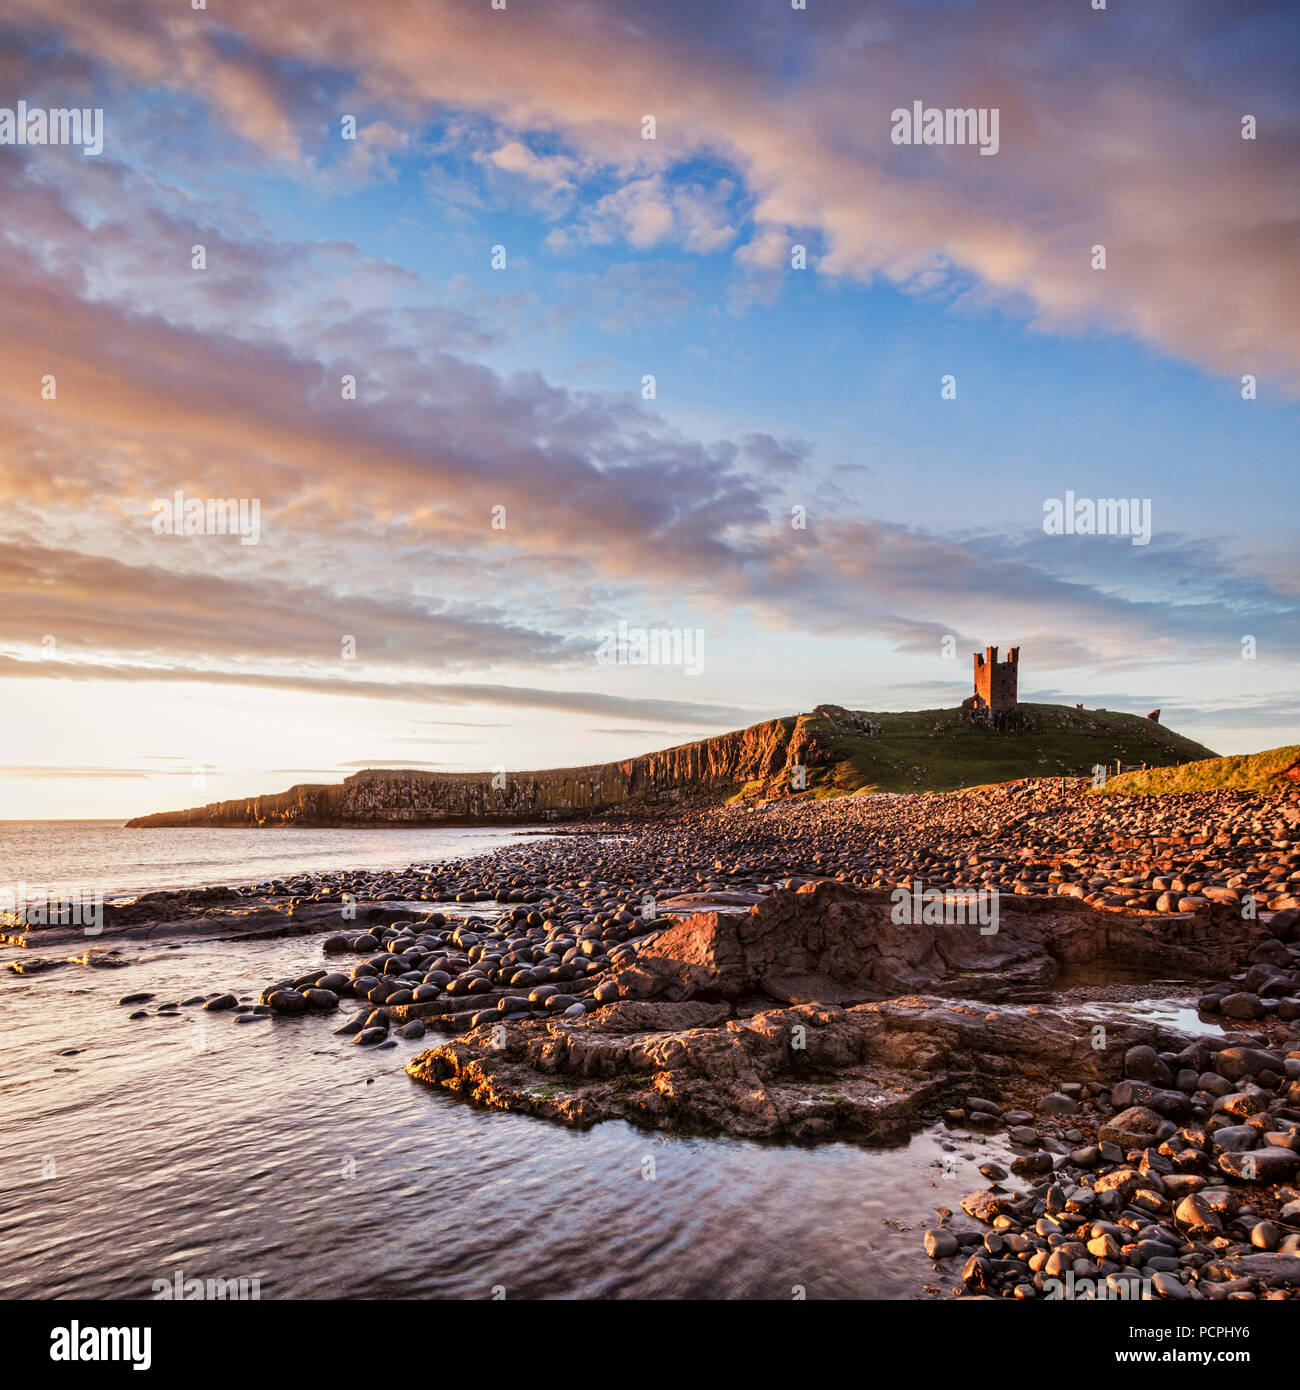 Castillo de Dunstanburgh, ahora una ruina, ordenando a la playa en la Bahía de Embleton, Northumberland, Inglaterra, bajo un espectacular amanecer. Foto de stock